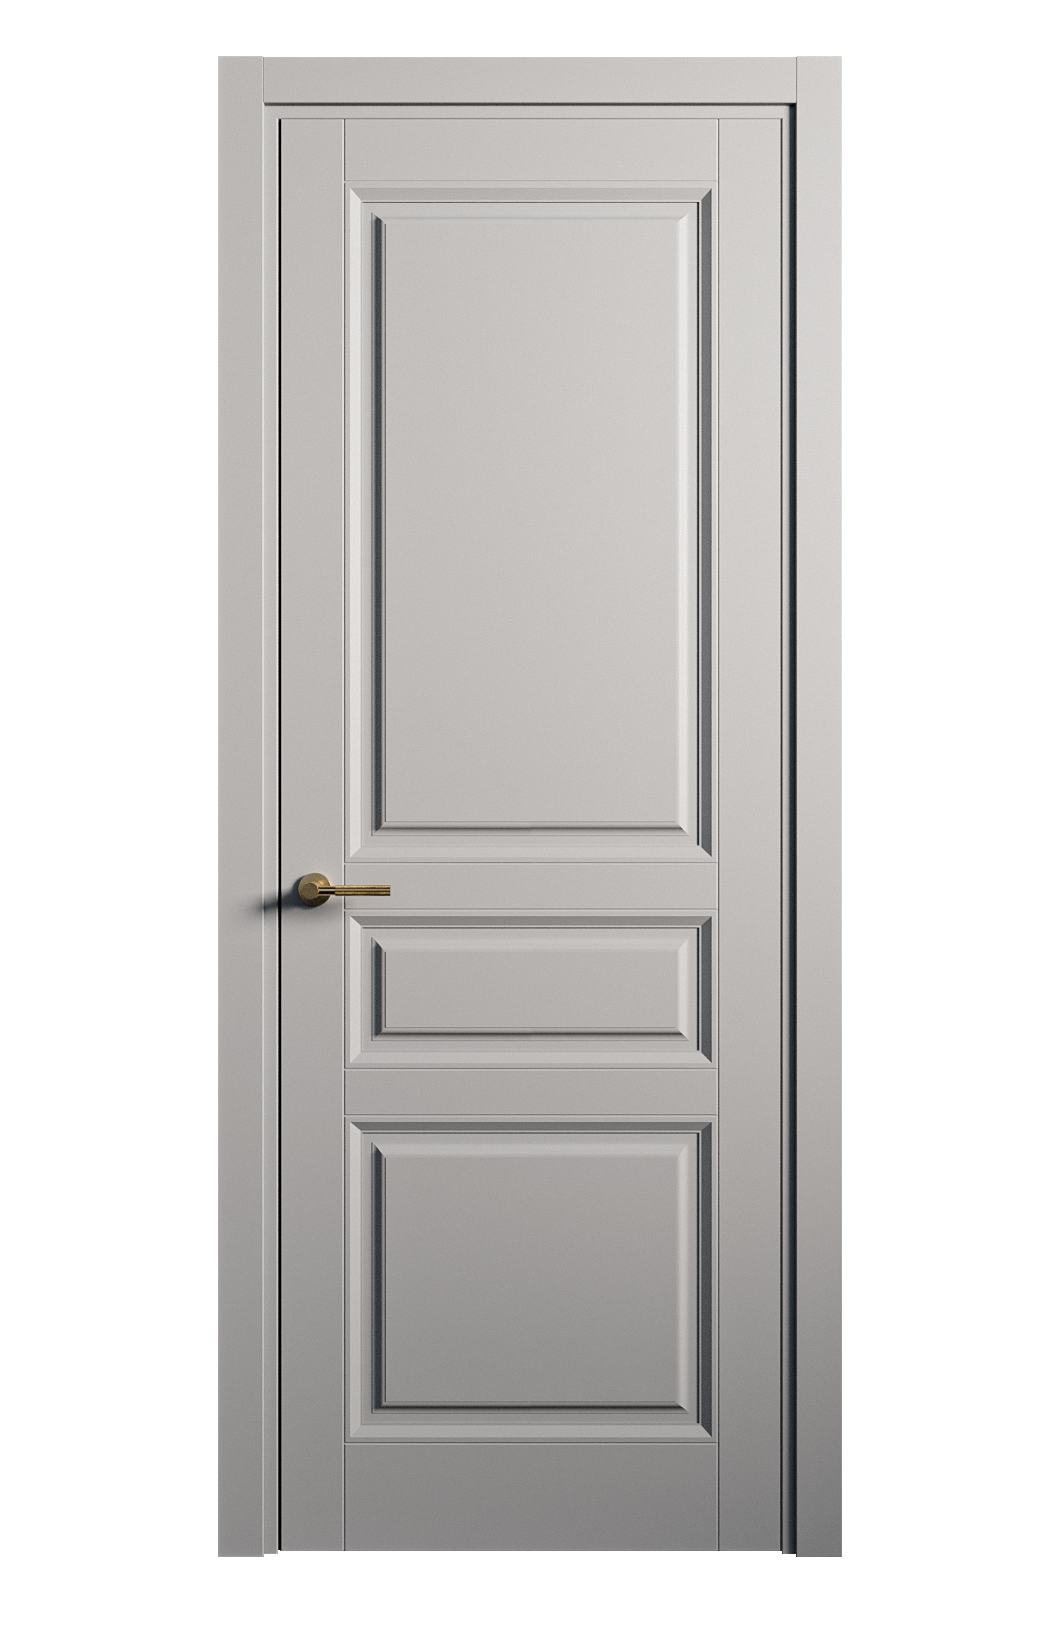 Межкомнатная дверь Venezia-2 глухая эмаль ral 7040 25703